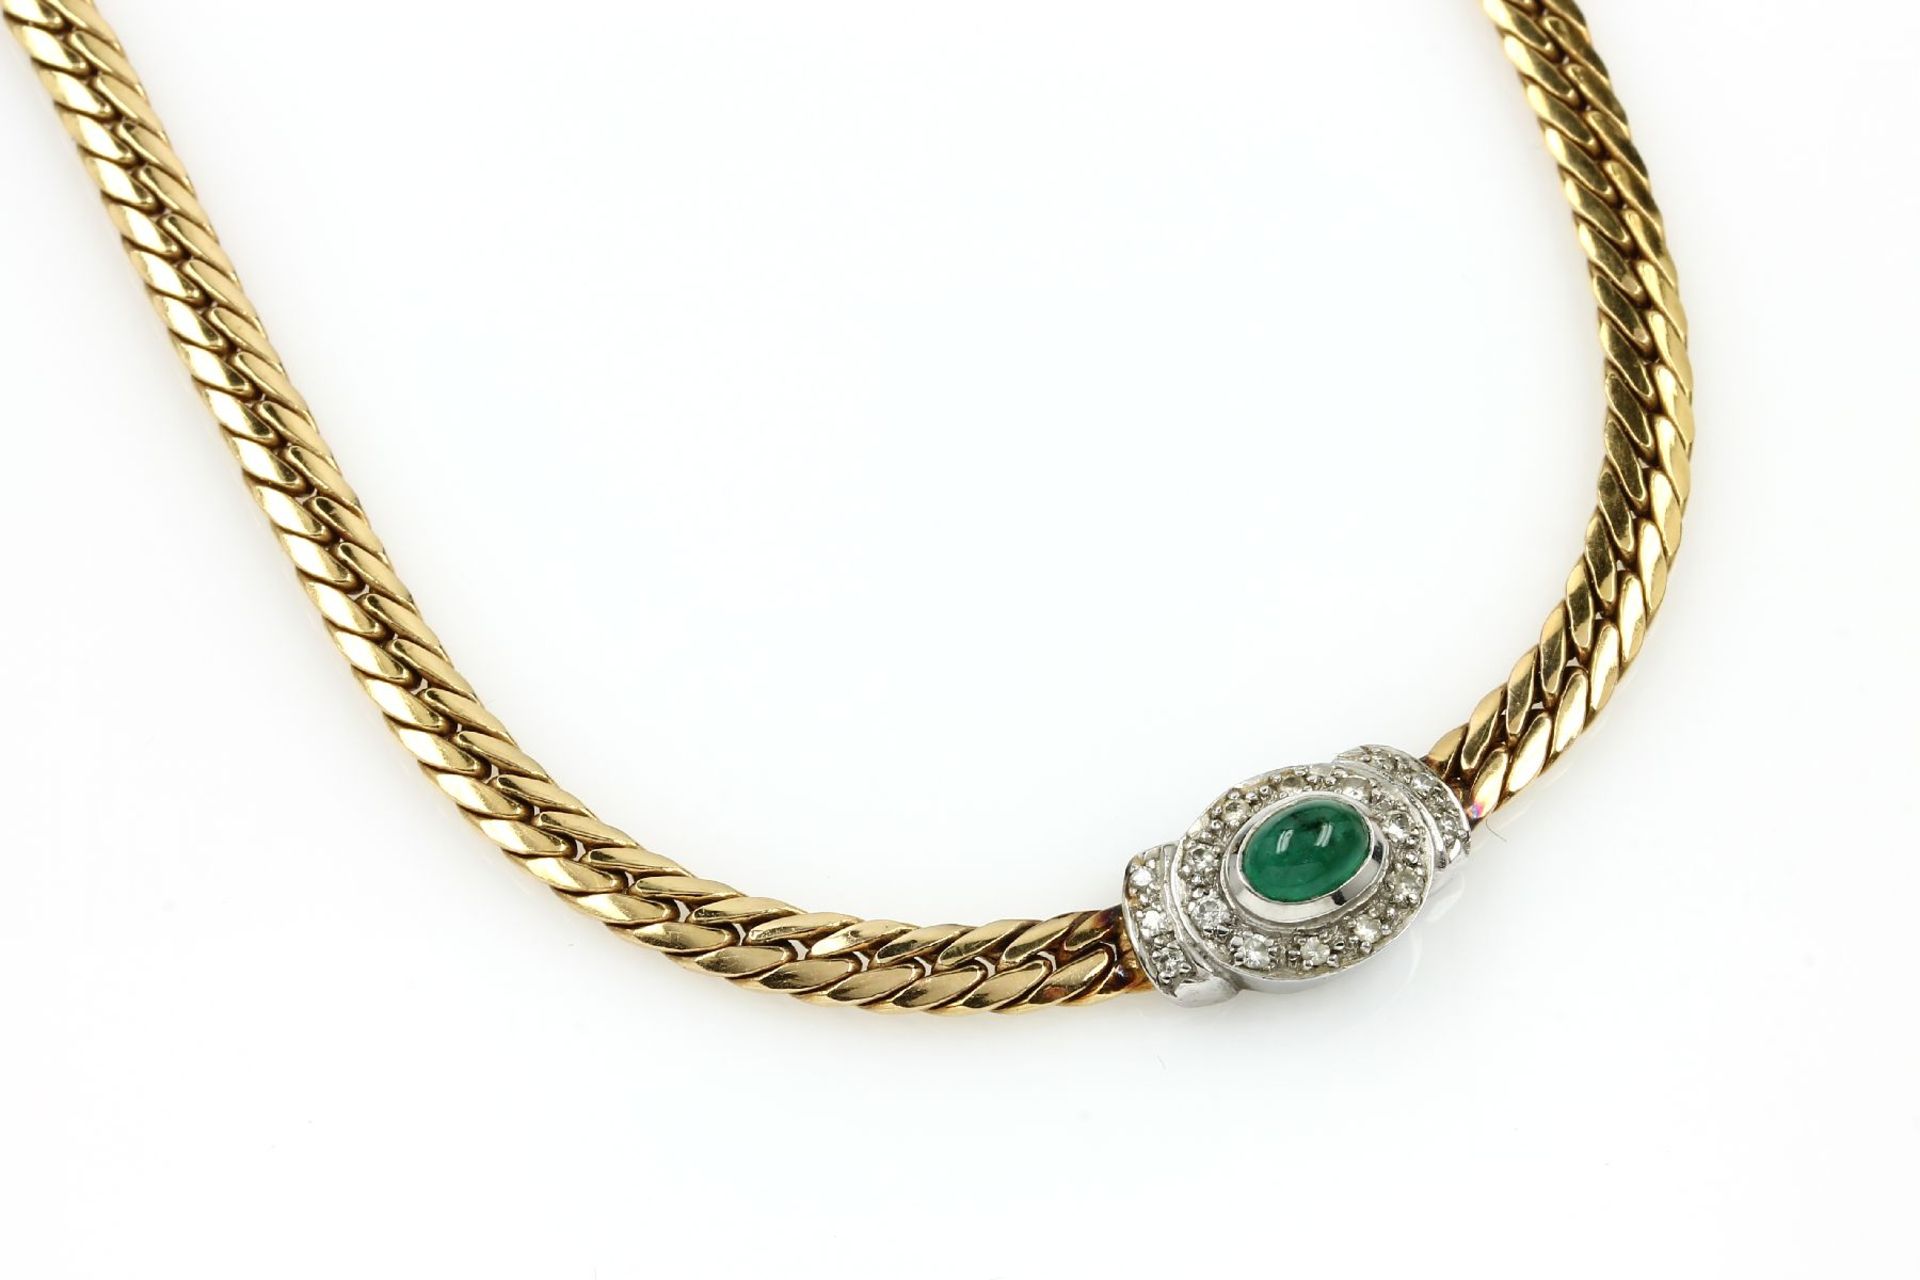 14 kt Gold Collier mit Diamanten und Smaragd, GG/WG 585/000, mittig ovaler Smaragdcabochon ca. 1.0